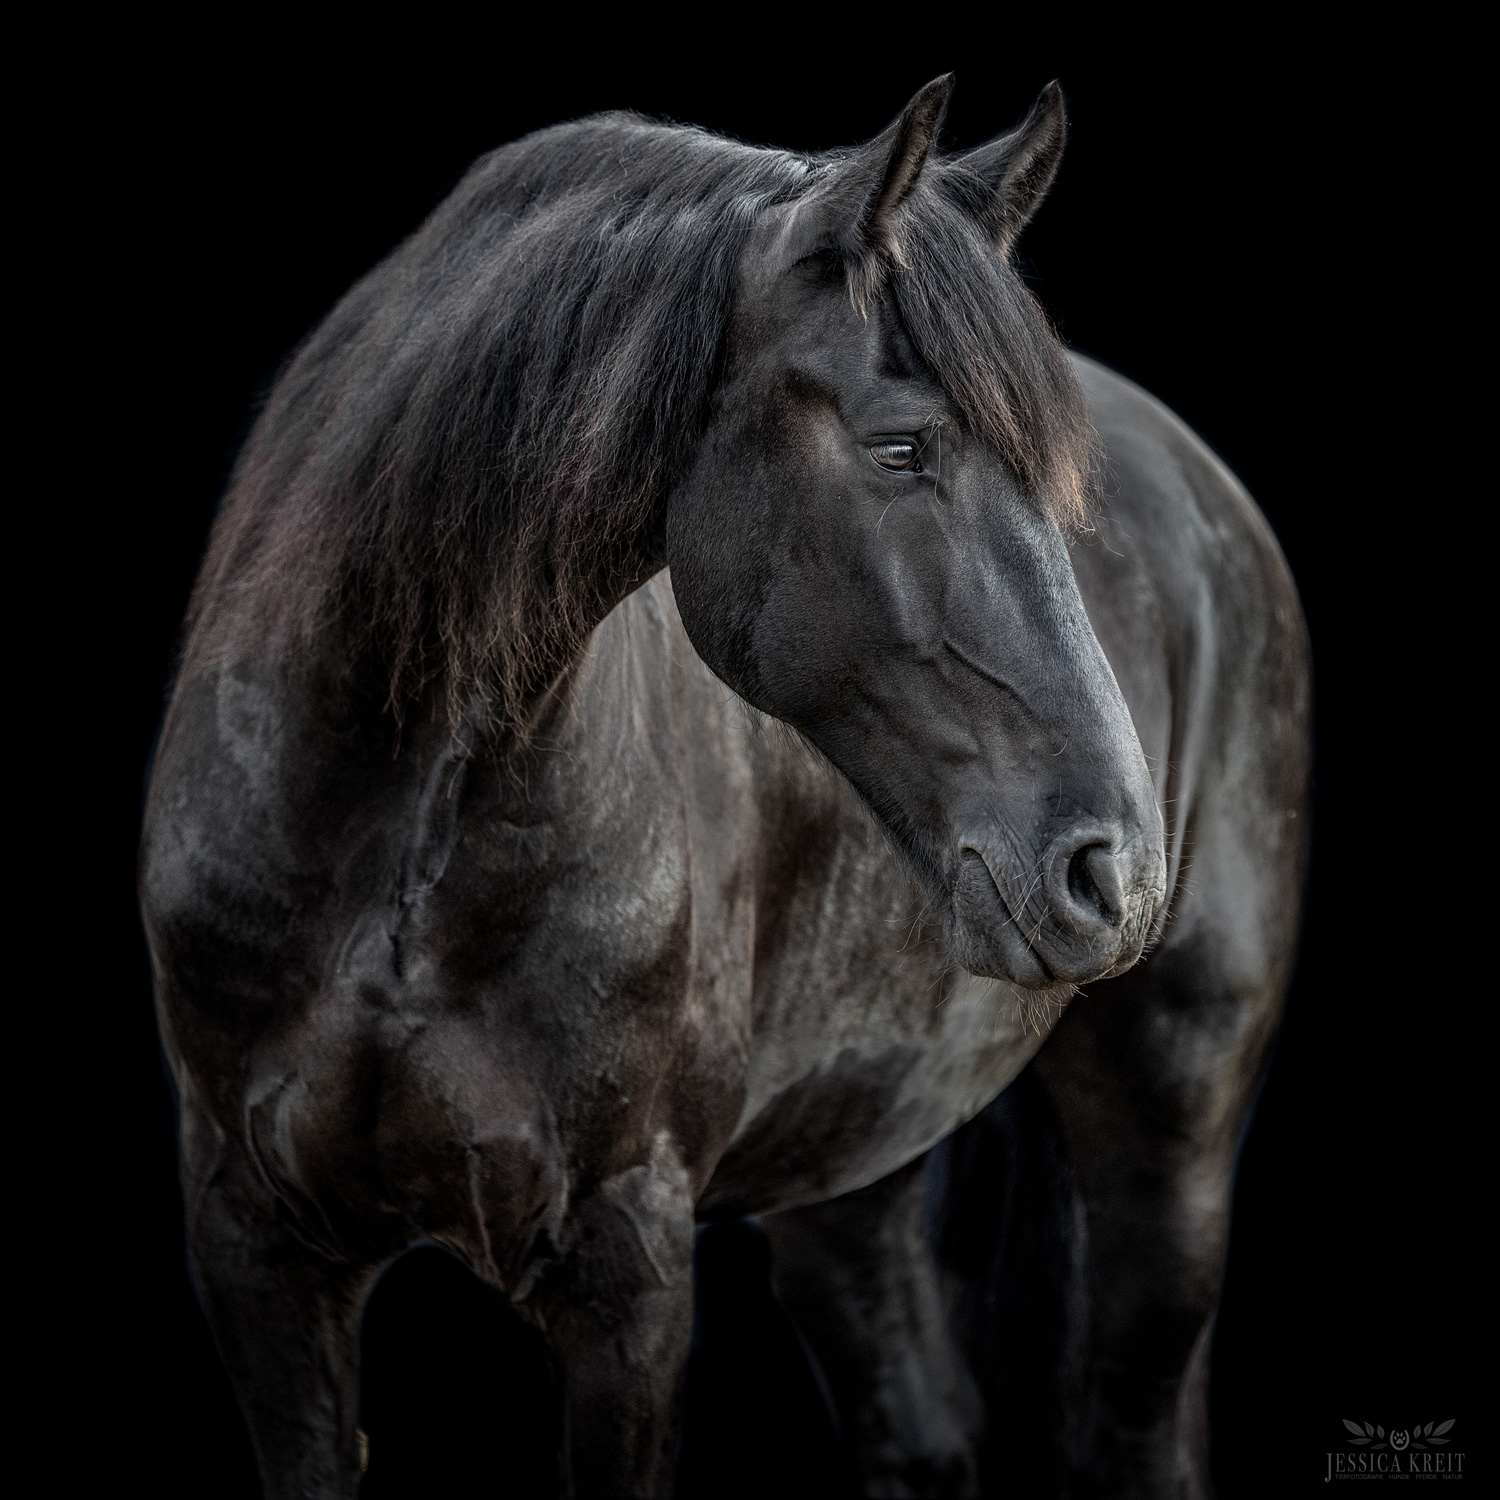 Pferdefotoshooting Pferd im Studio entstanden bei einem Fotoshooting mit Tierfotografie Jessica Kreit aus Hannover